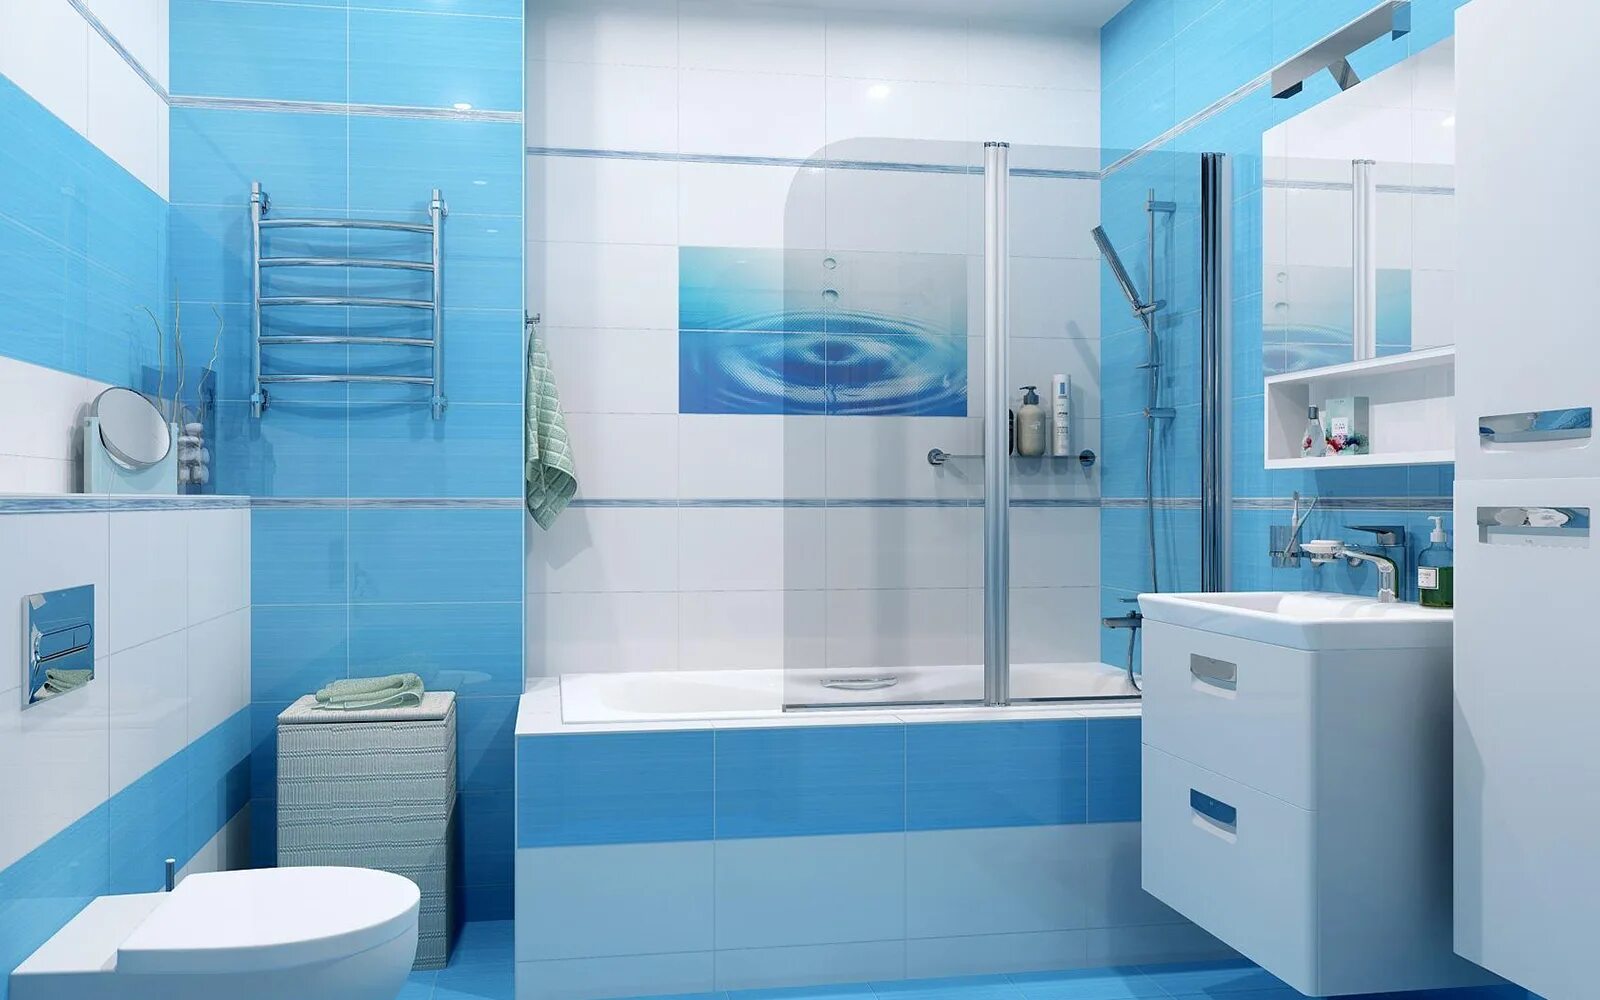 Фото сантехники ванной комнаты. Плитка Regata Ceradim. Плитка Старфиш Керадим. Плитка Керадим Лагуна. Ванная с белой и голубой плиткой.